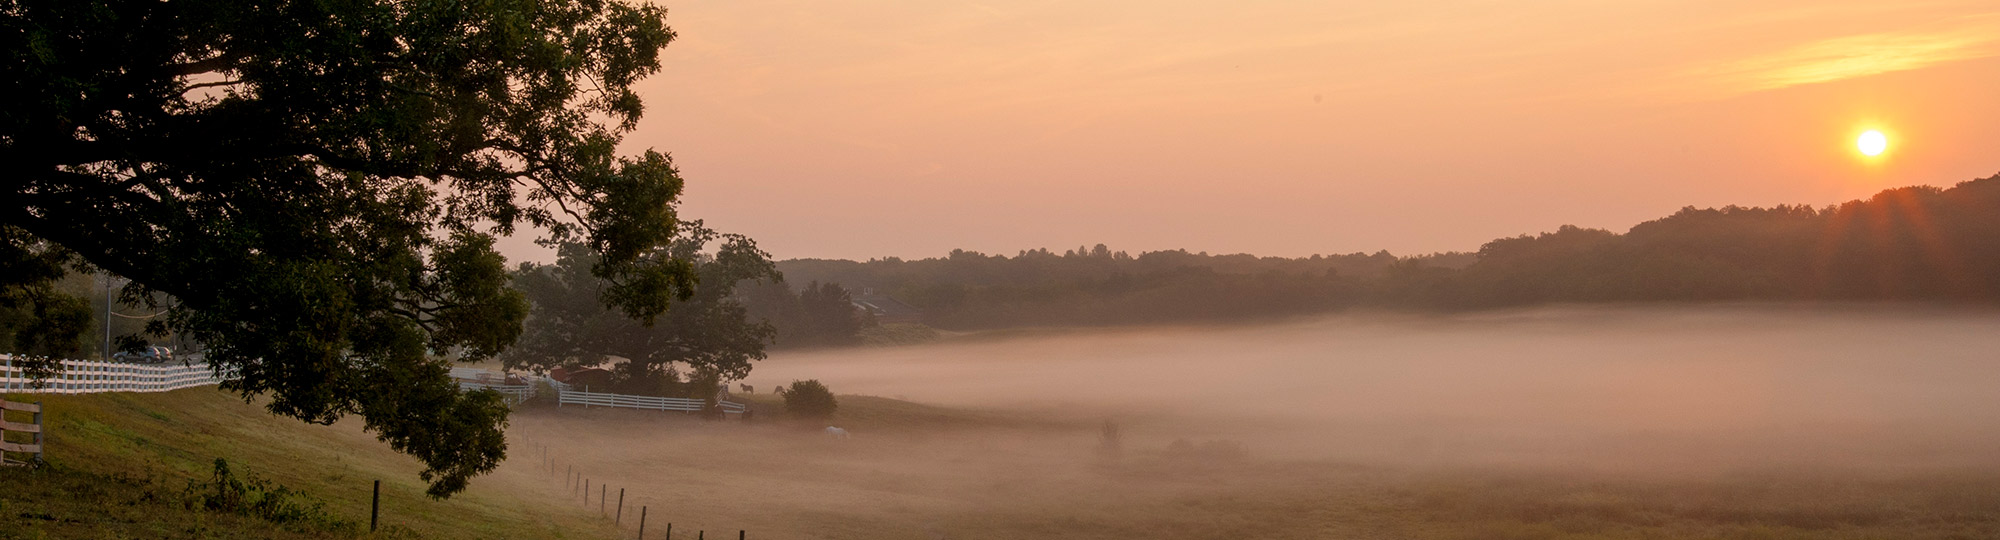 sun rising over a foggy uconn field